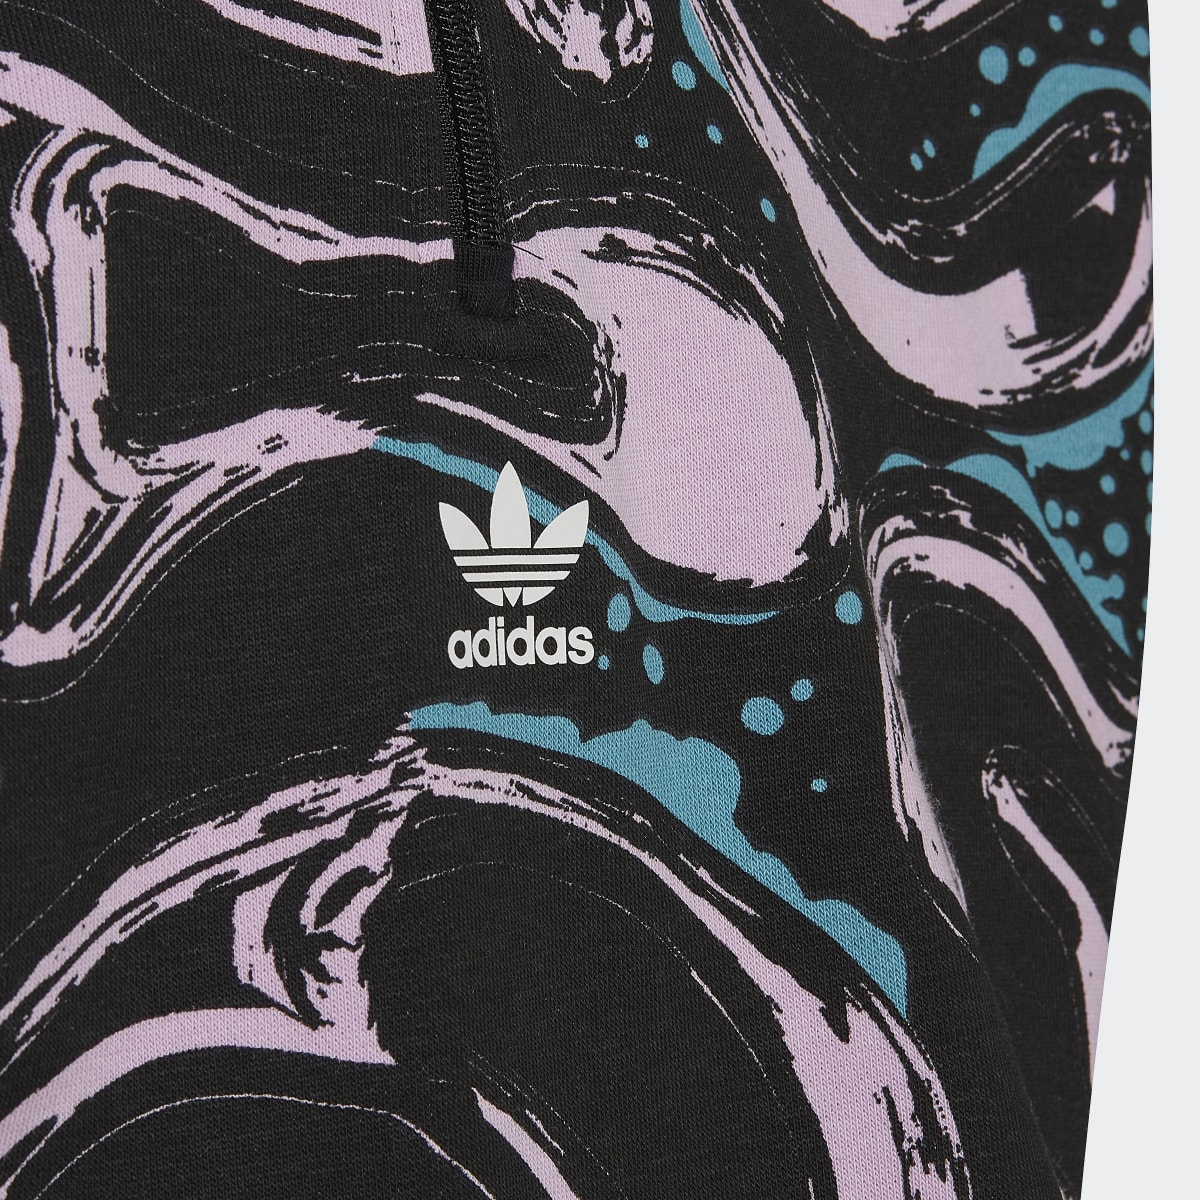 Adidas Allover Print Half-Zip Crop Crew Sweatshirt. 4